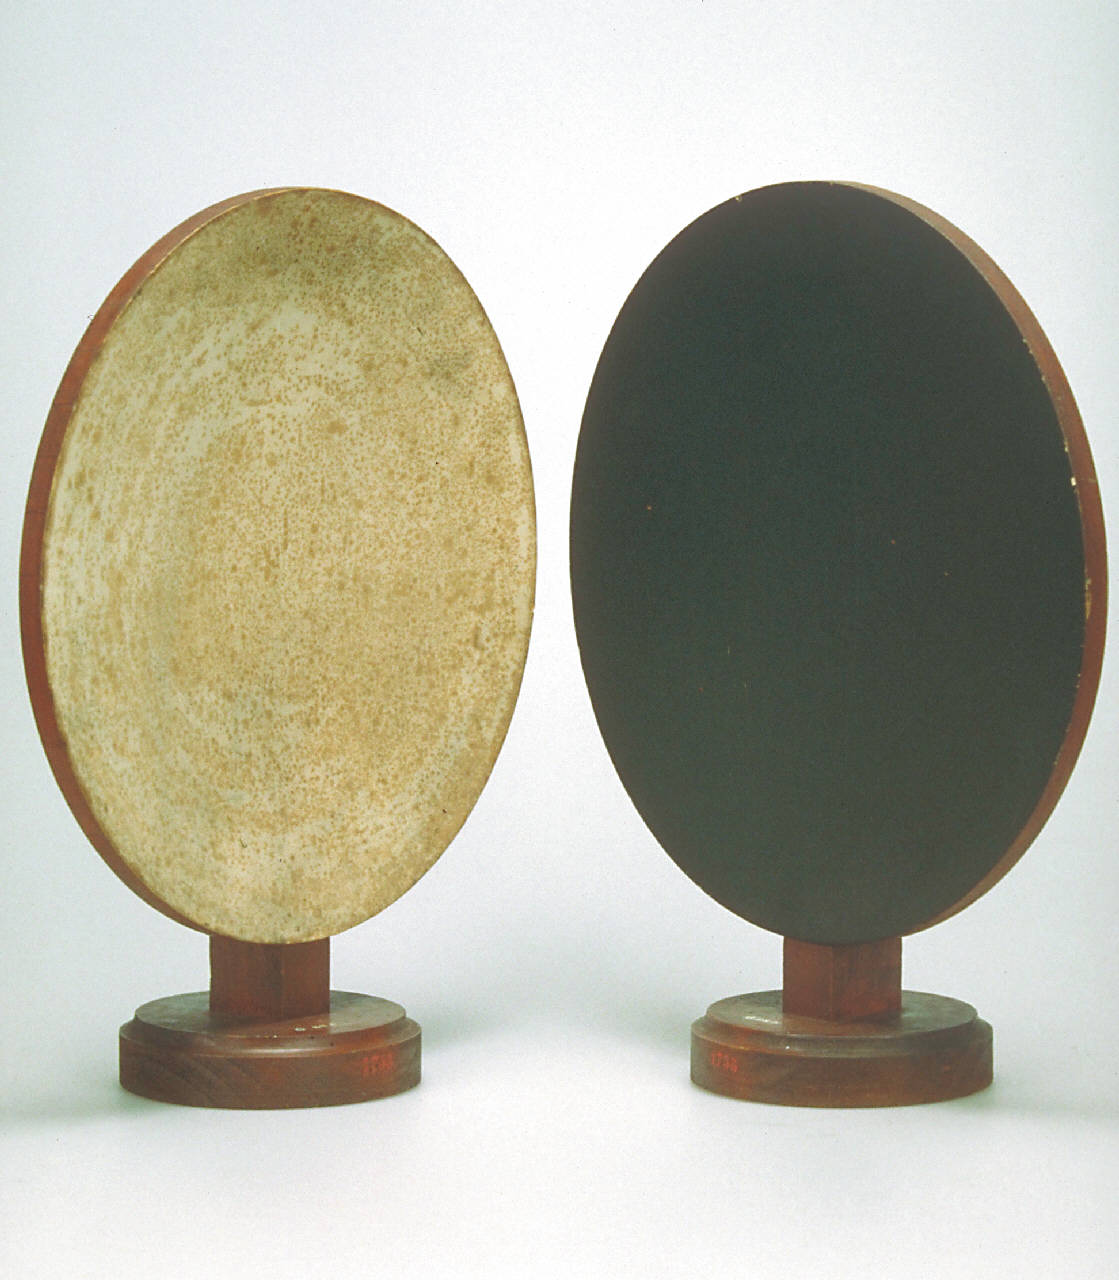 Specchi concavi di legno per la riflessione del calore raggiante (1810 ca.)